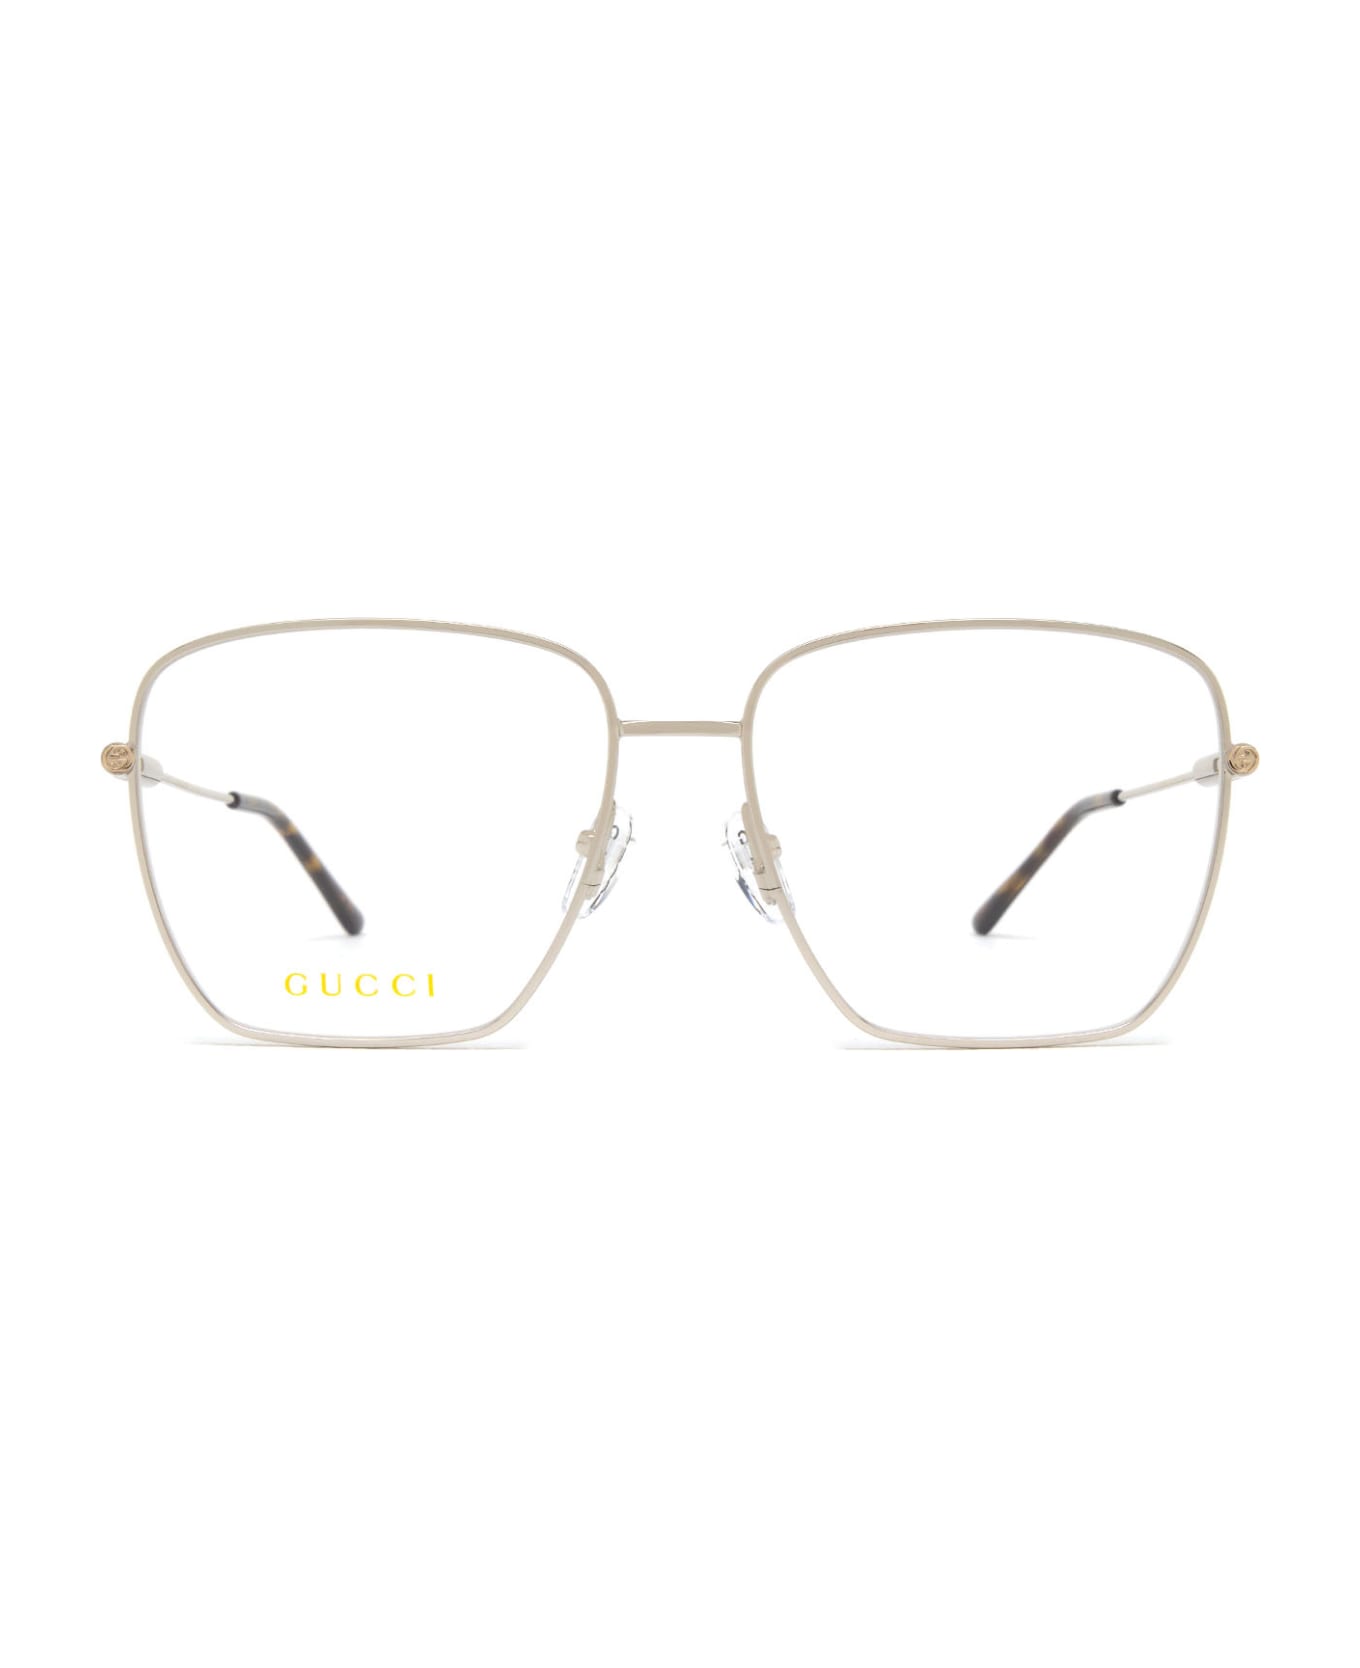 Gucci Eyewear Gg1414o Silver Glasses - Silver アイウェア